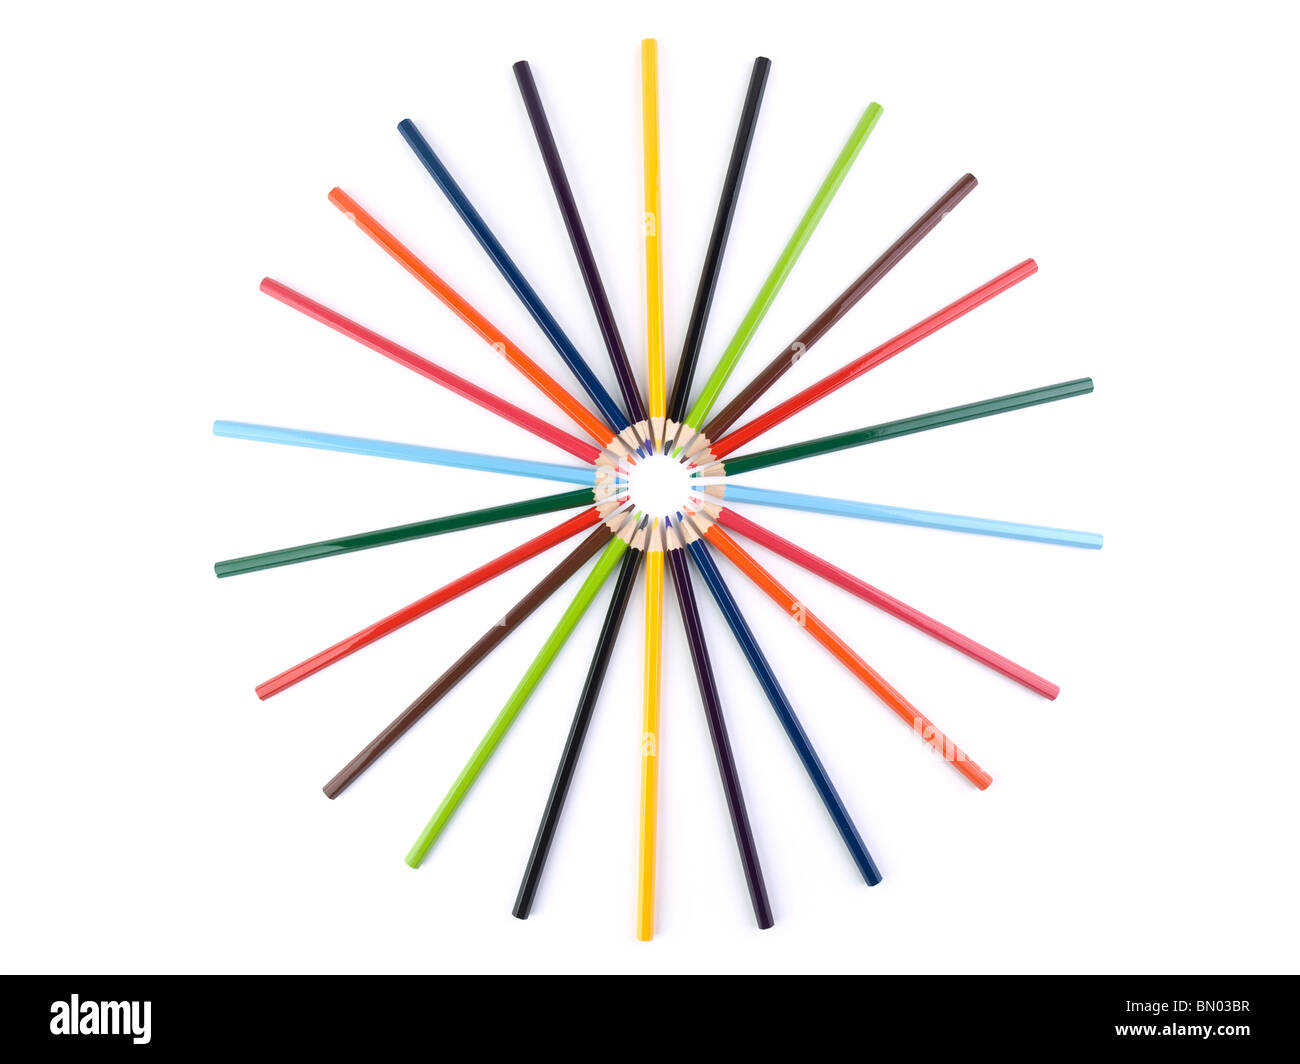 Un círculo formado por varios lápices de colores. Aislado en blanco. Foto de stock